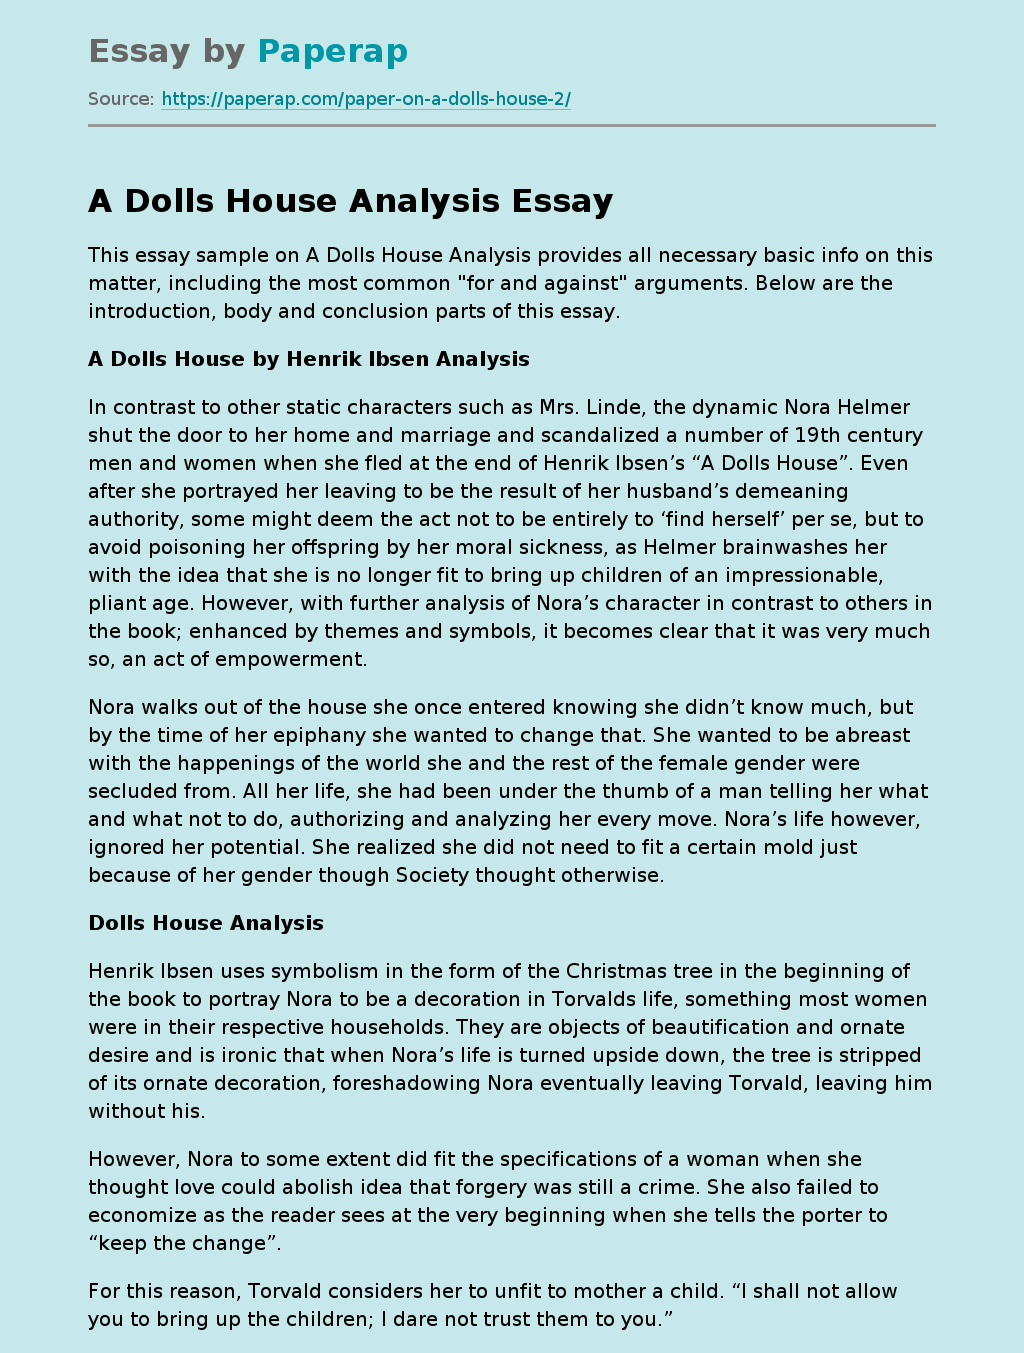 doll's house essay topics